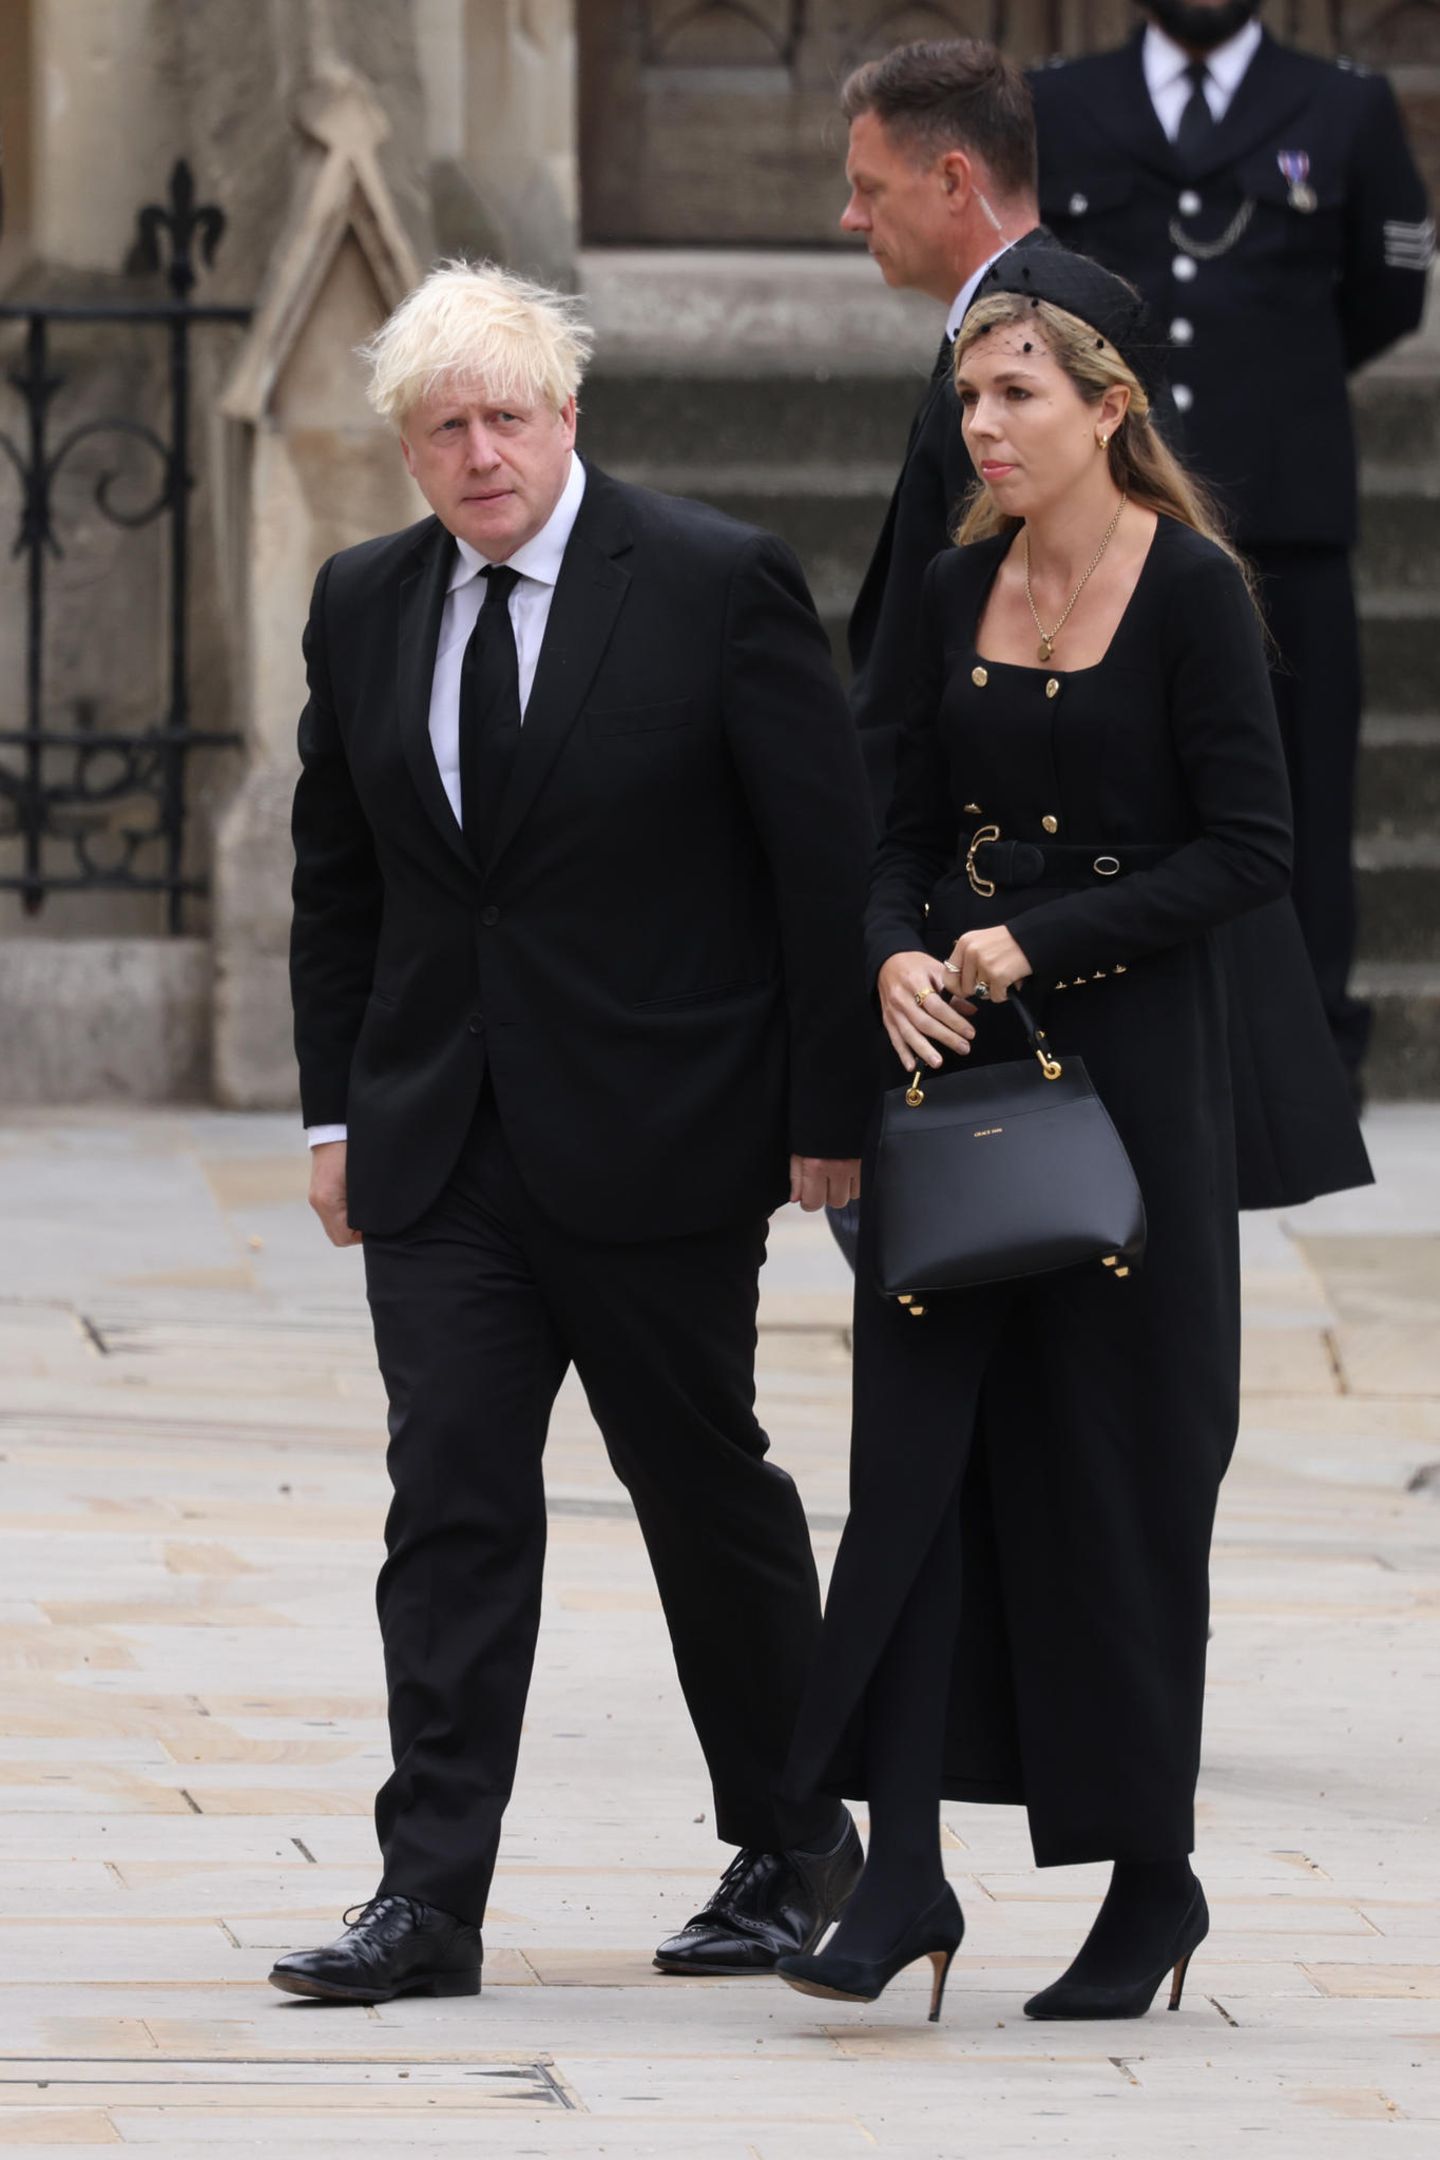 Der ehemalige Premierminister Boris Johnson und seine Frau Carrie kommen an der Kirche an. Carrie trägt ein Kleid von Karen Millen, das durch seine doppelreihige Knopfleiste auffällt. In der Hand hält sie die "Love Letter"-Tasche von Grace Han, die auch Kate besitzt und liebt. 